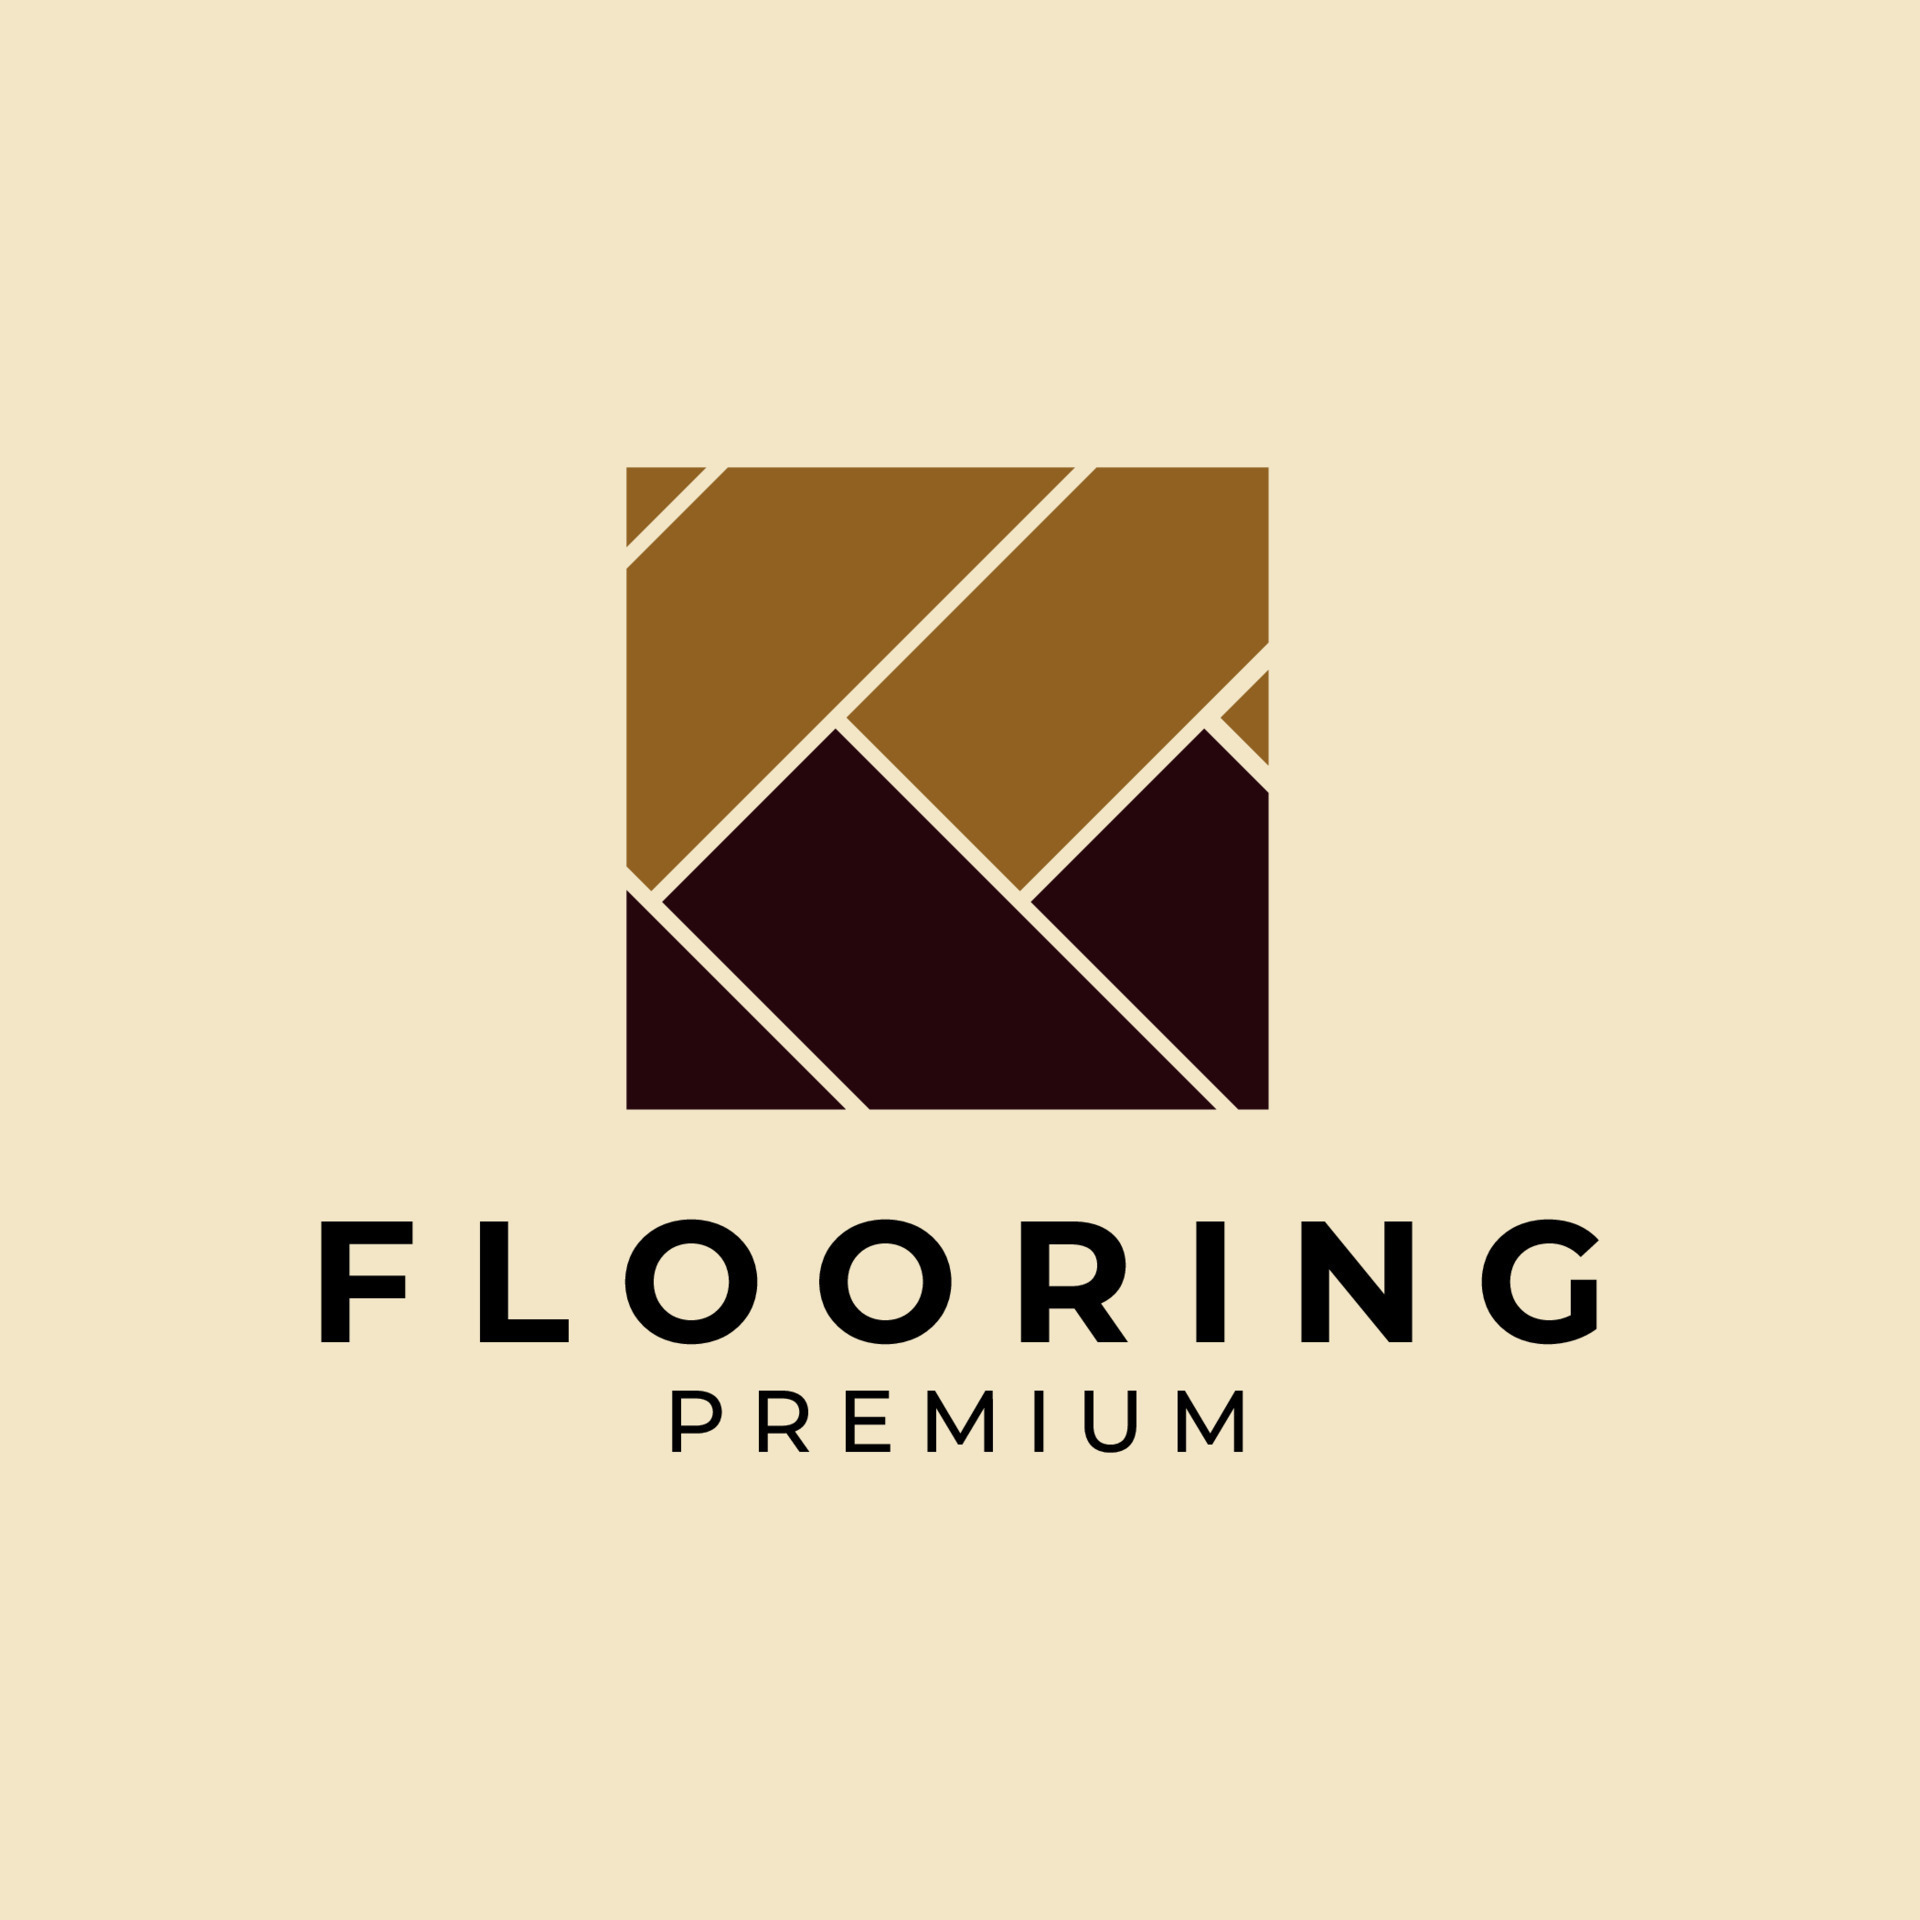 flooring logo ideas 1